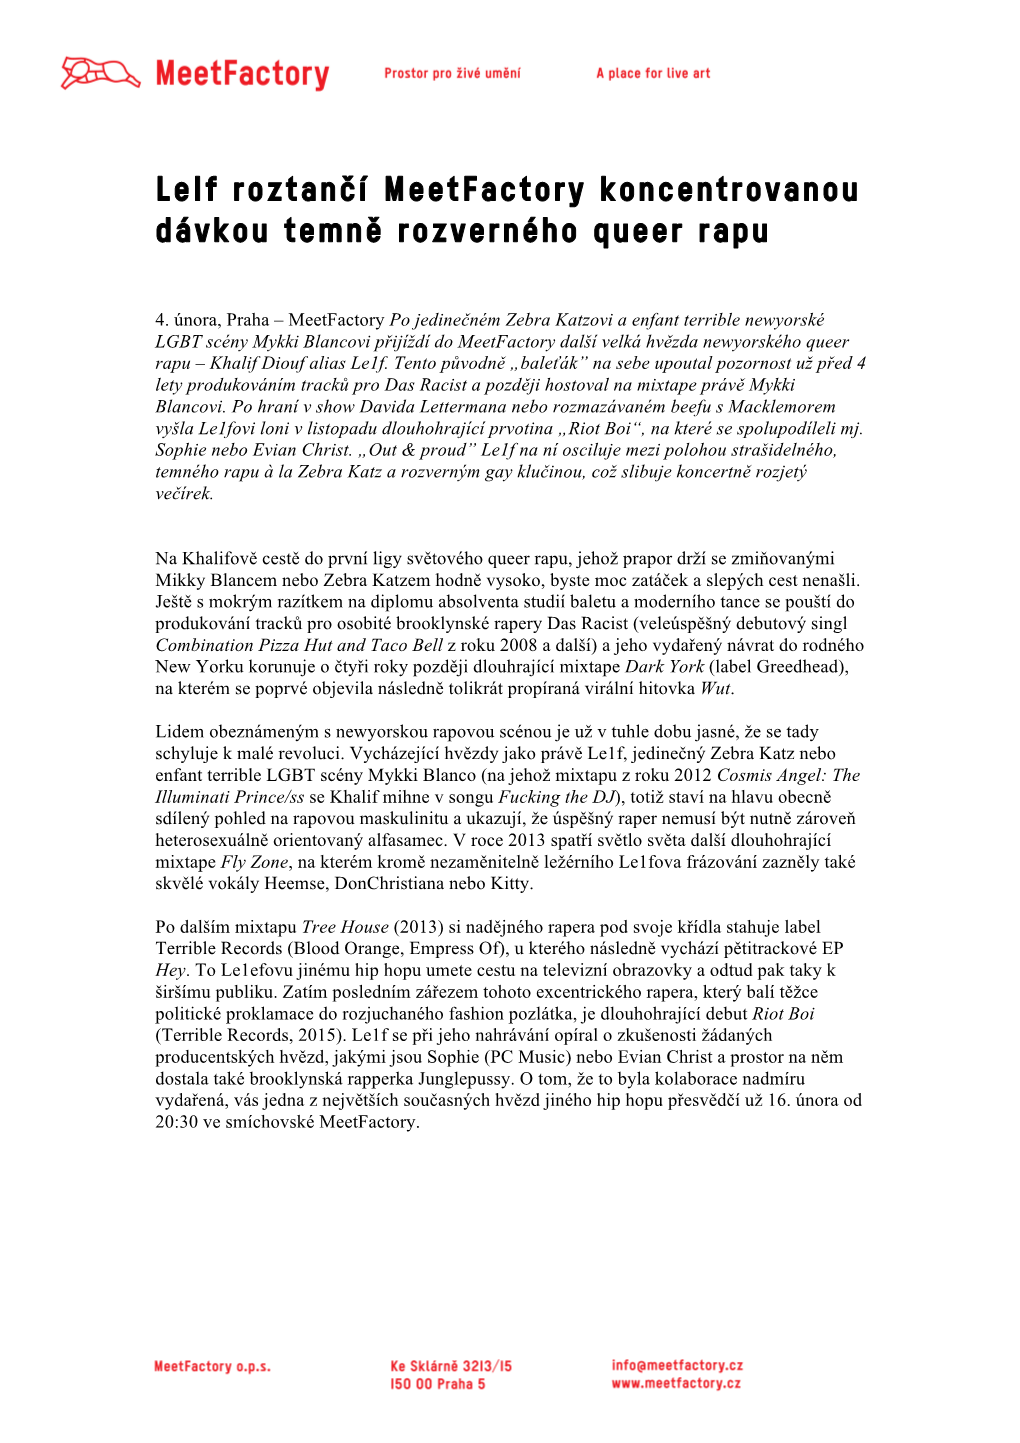 Tzovi a Enfant Terrible Newyorské LGBT Scény Mykki Blancovi Přijíždí Do Meetfactory Další Velká Hvězda Newyorského Queer Rapu – Khalif Diouf Alias Le1f